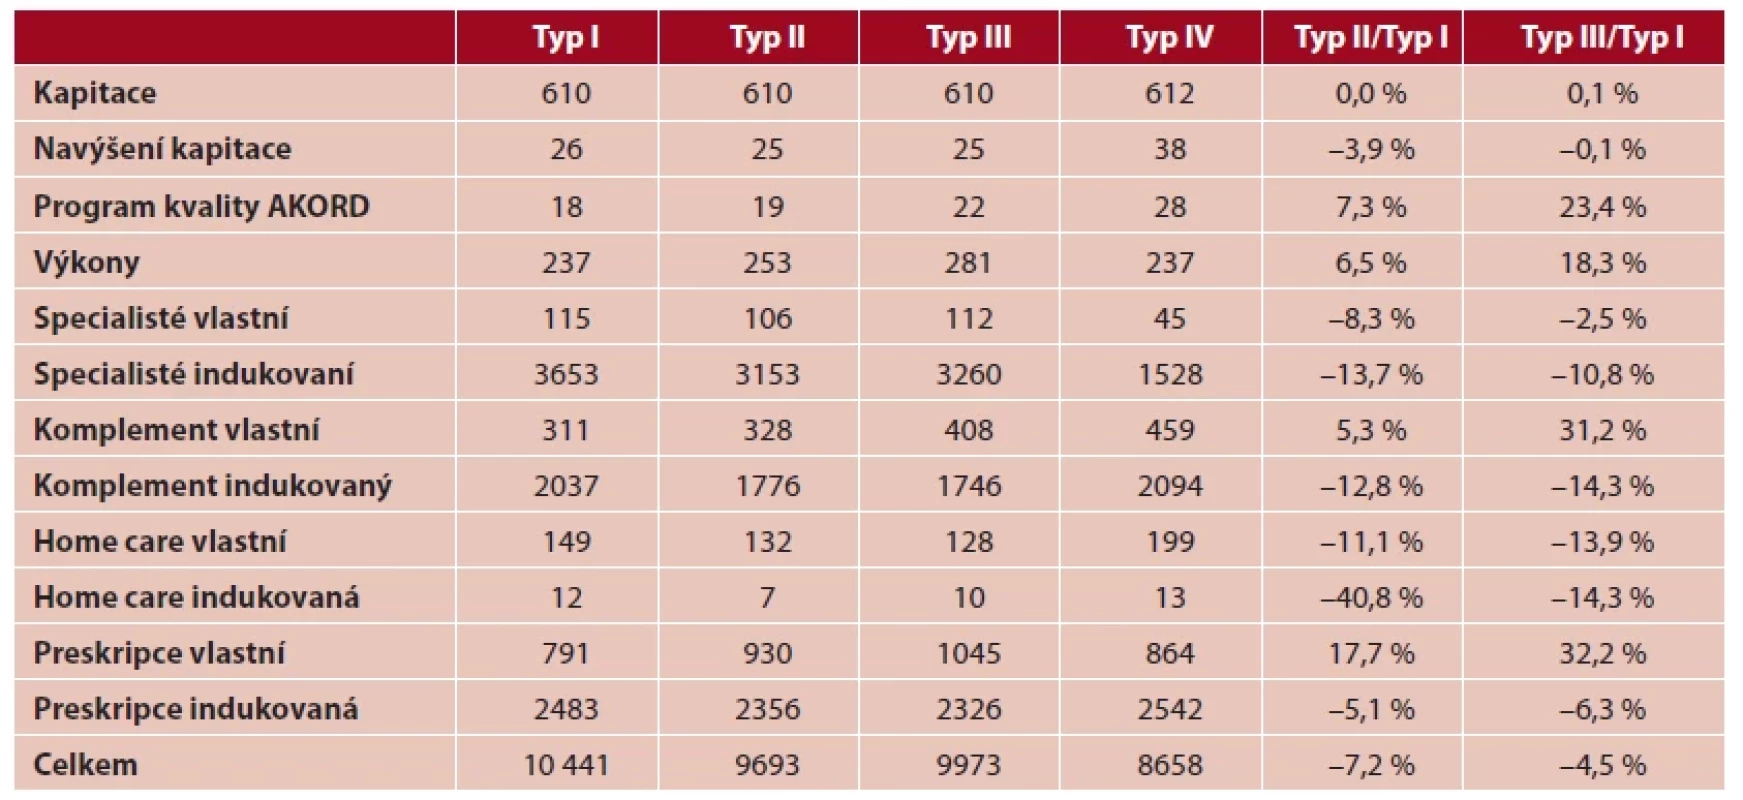 Struktura nákladů (Kč/jednicový pojištěnec) a rozdíly mezi základními typy praxí (v %)
Typ I Typ II Typ III Typ IV Typ II/Typ